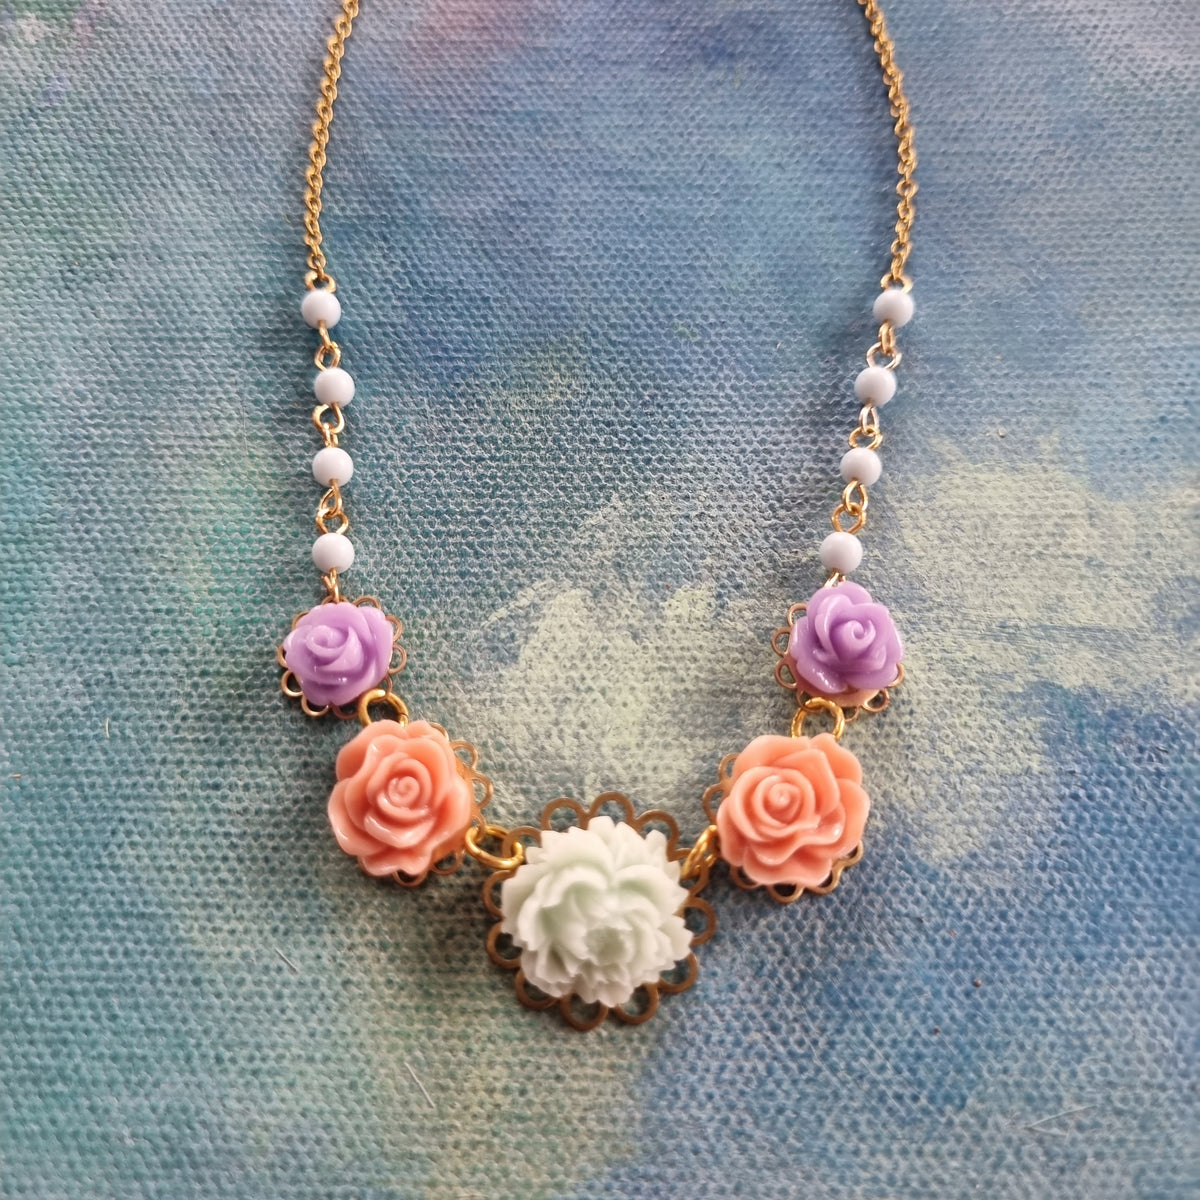 Lille halskæde #1 - Hårpynt med blomster og perler til bryllup, konfirmation og fest